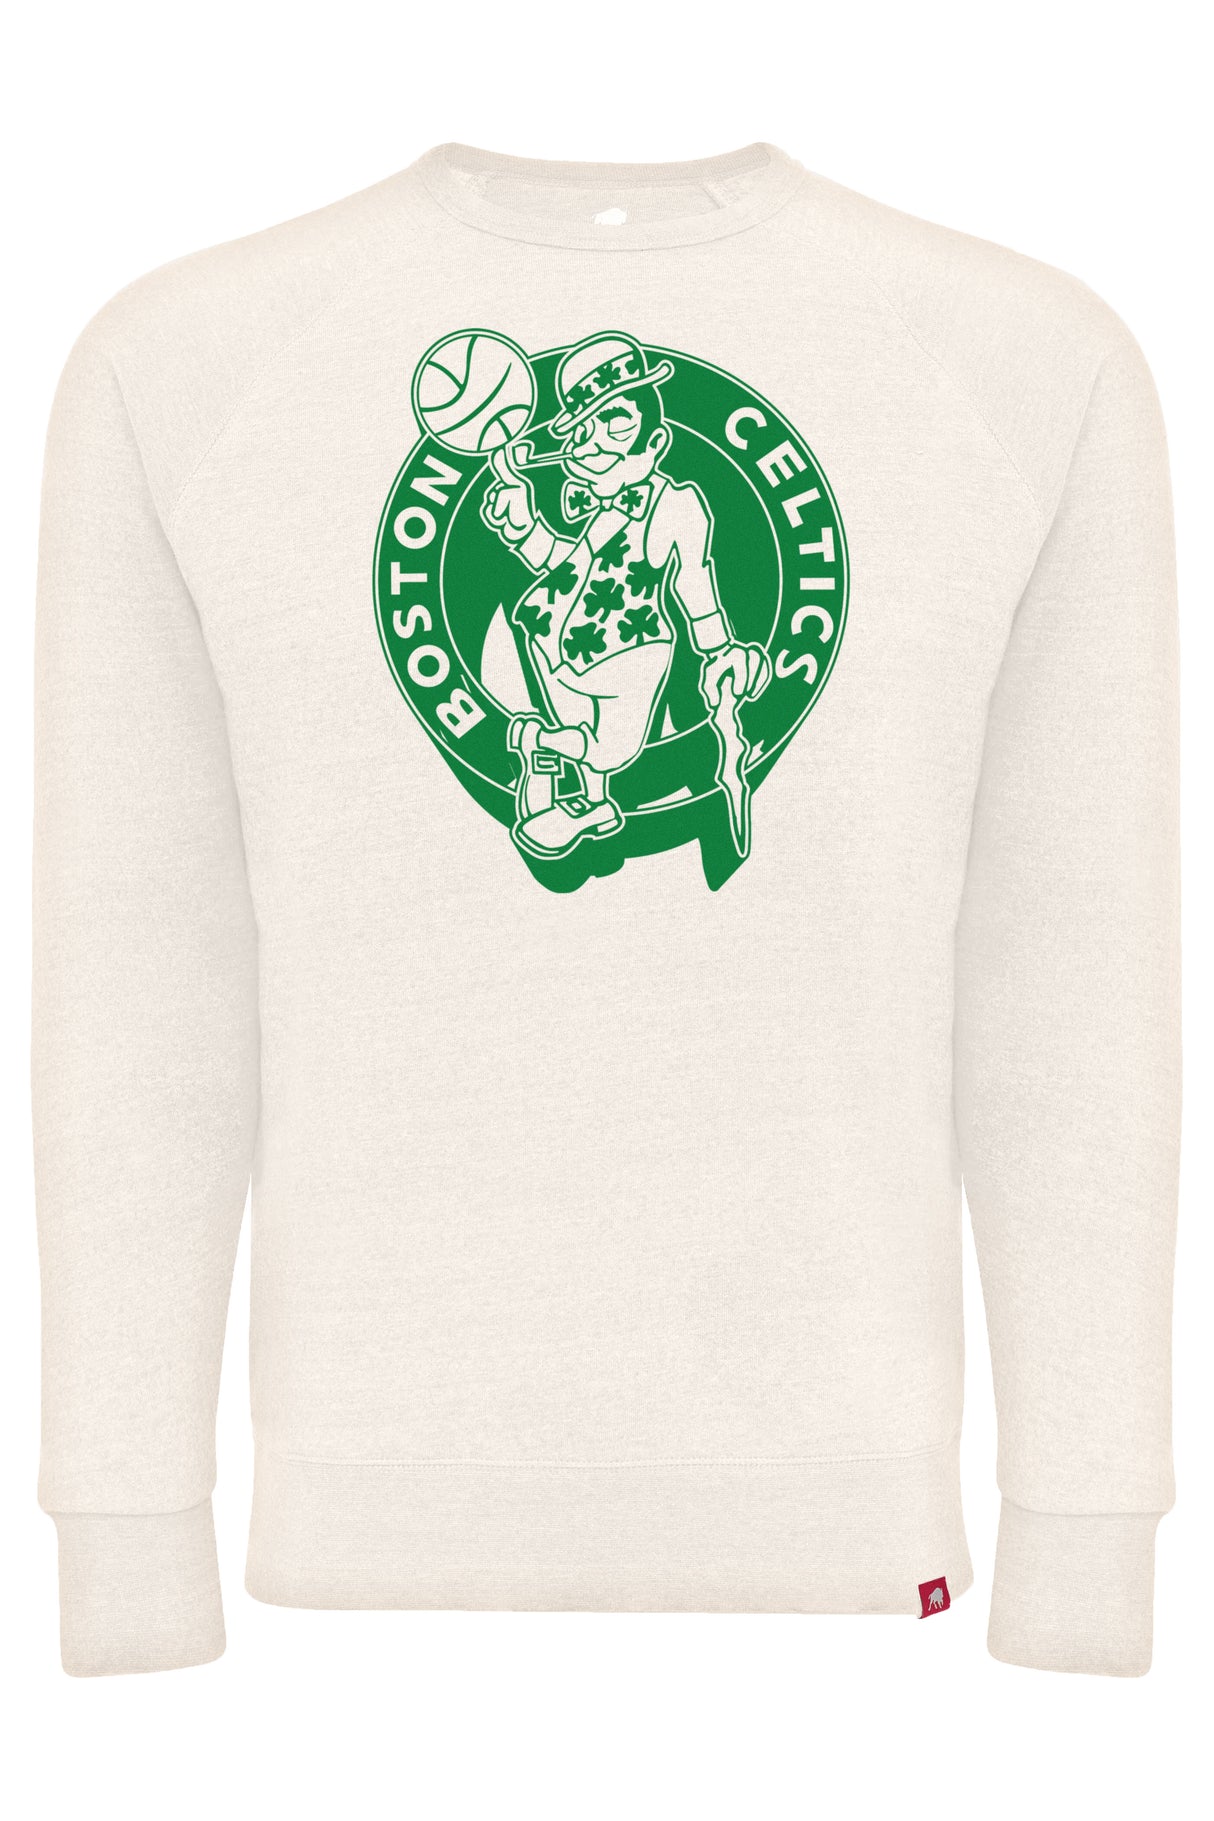 Boston Celtics Retro Sportiqe Harmon Crewneck